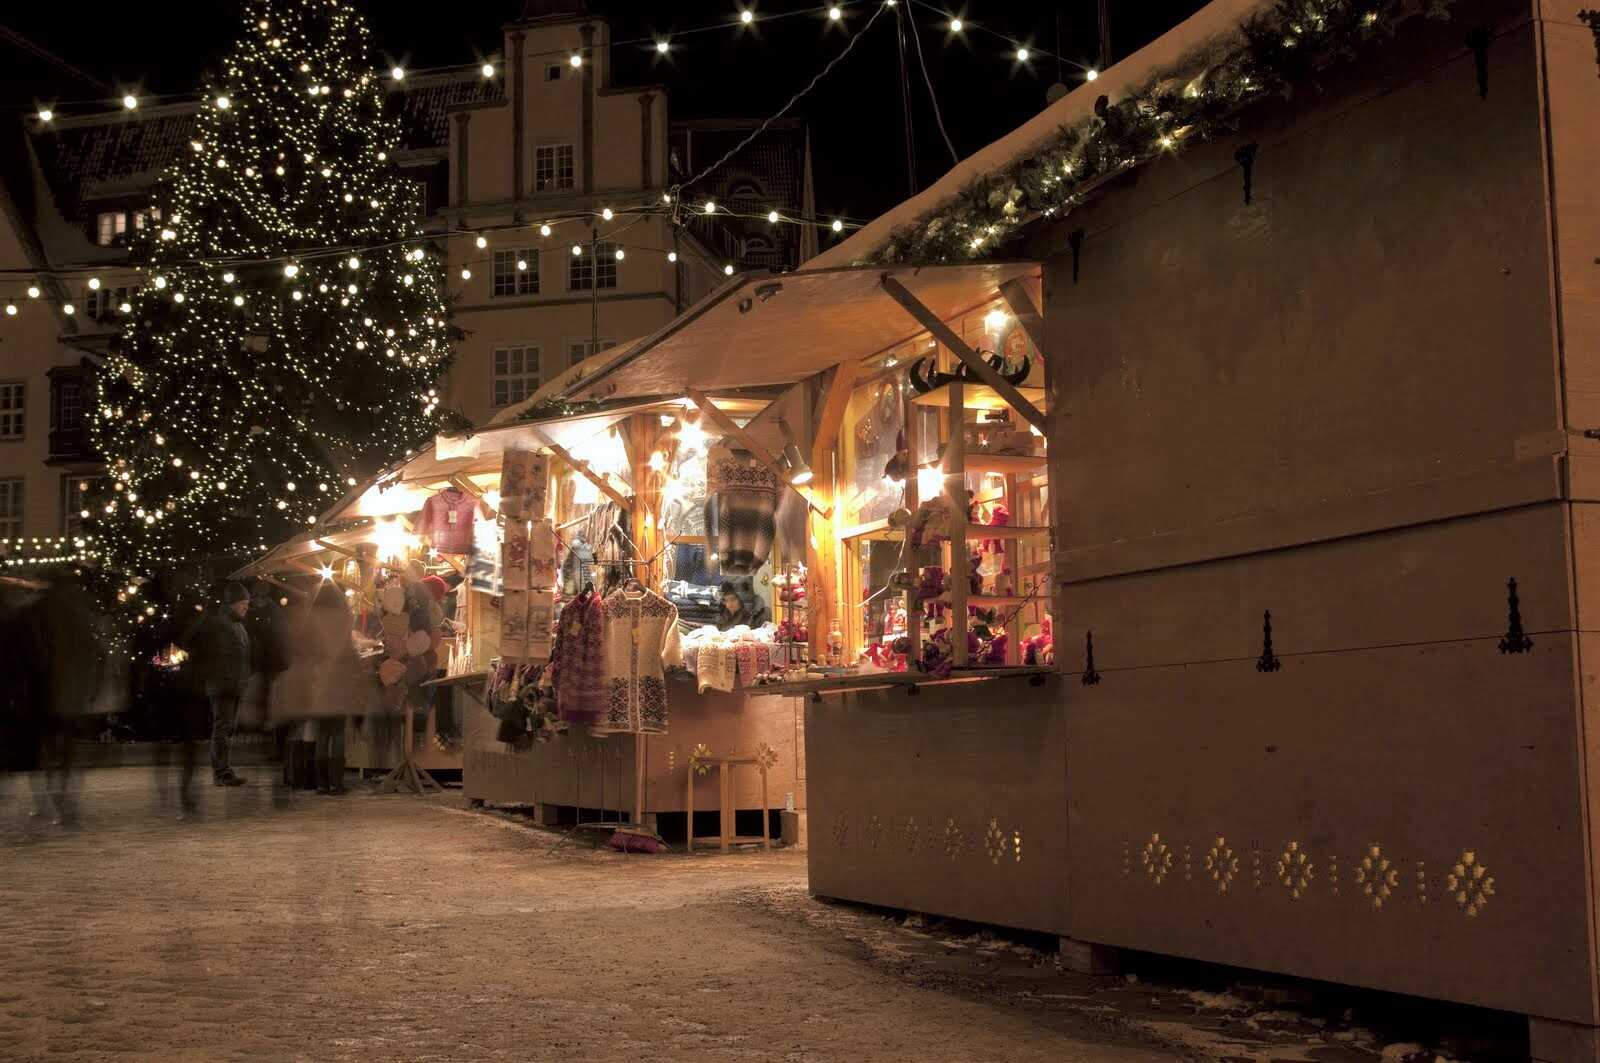 Christmas market in Tallinn Old Town